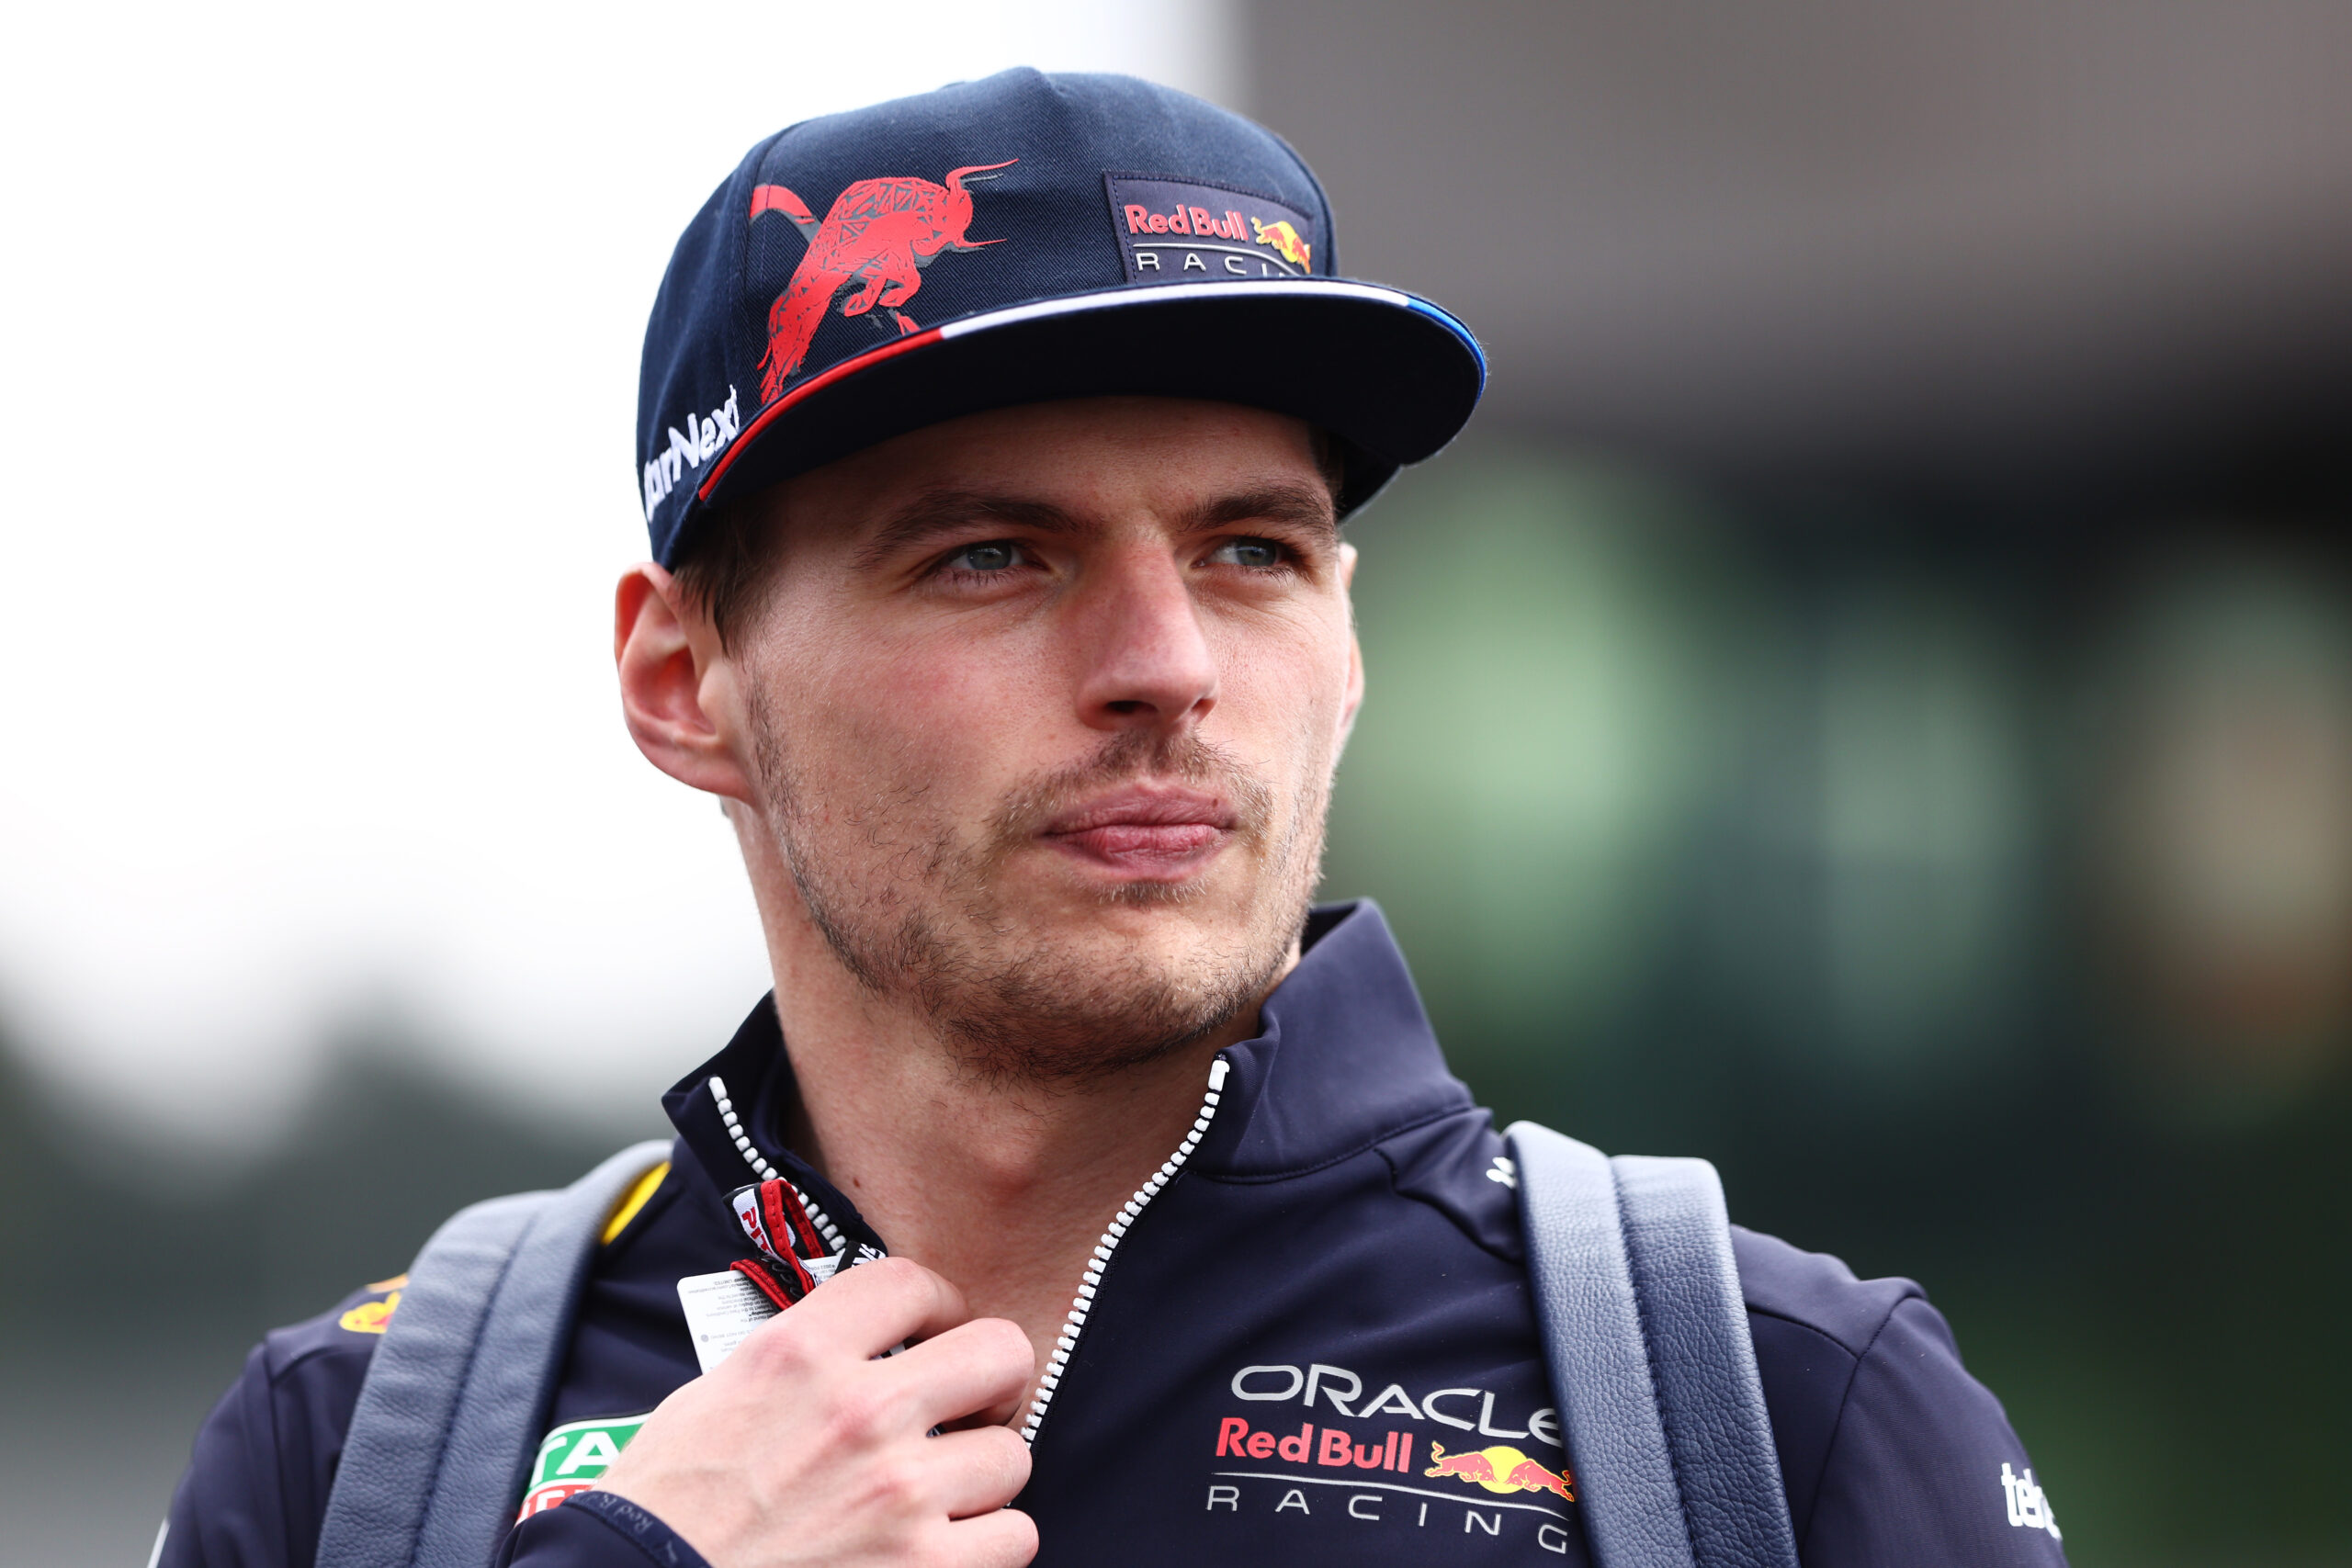 F1 - Verstappen en confiance avant le Grand Prix d'Autriche